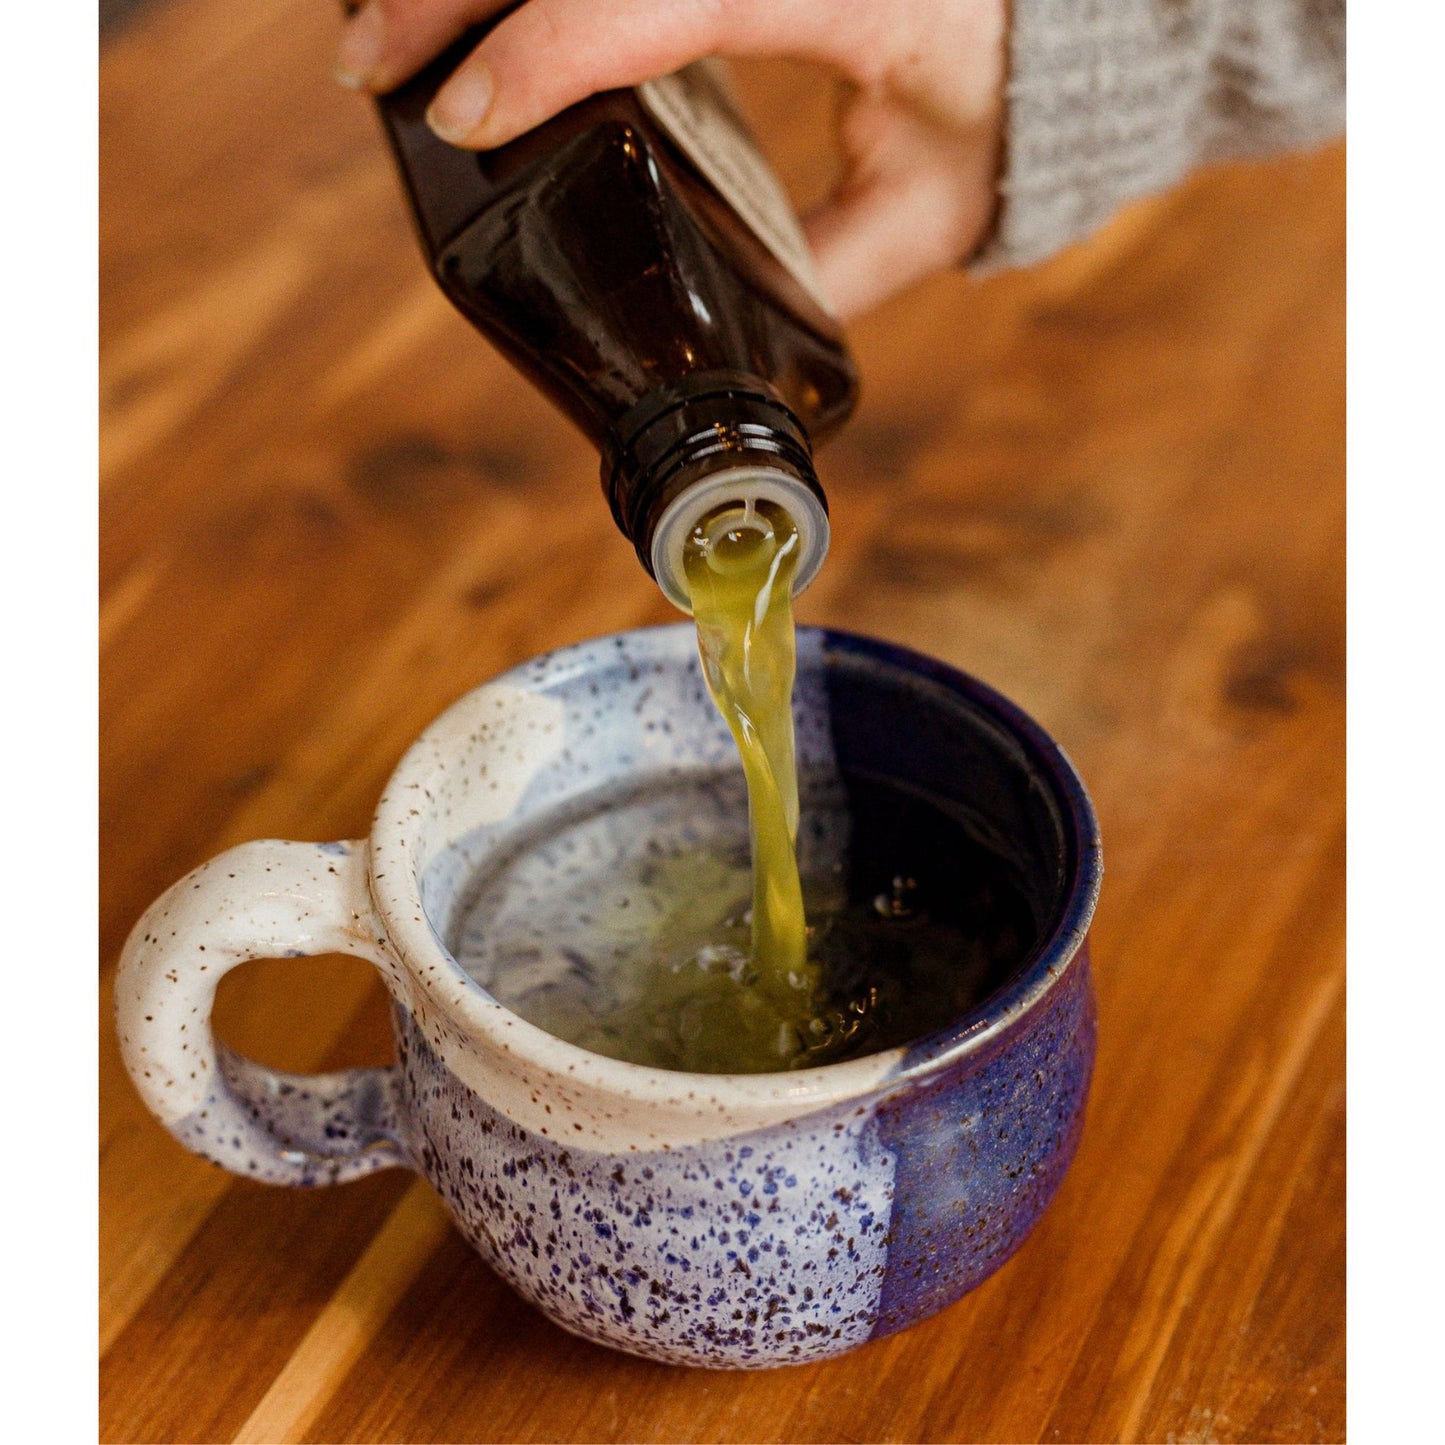 fire cider pouting into ceramic tea mug